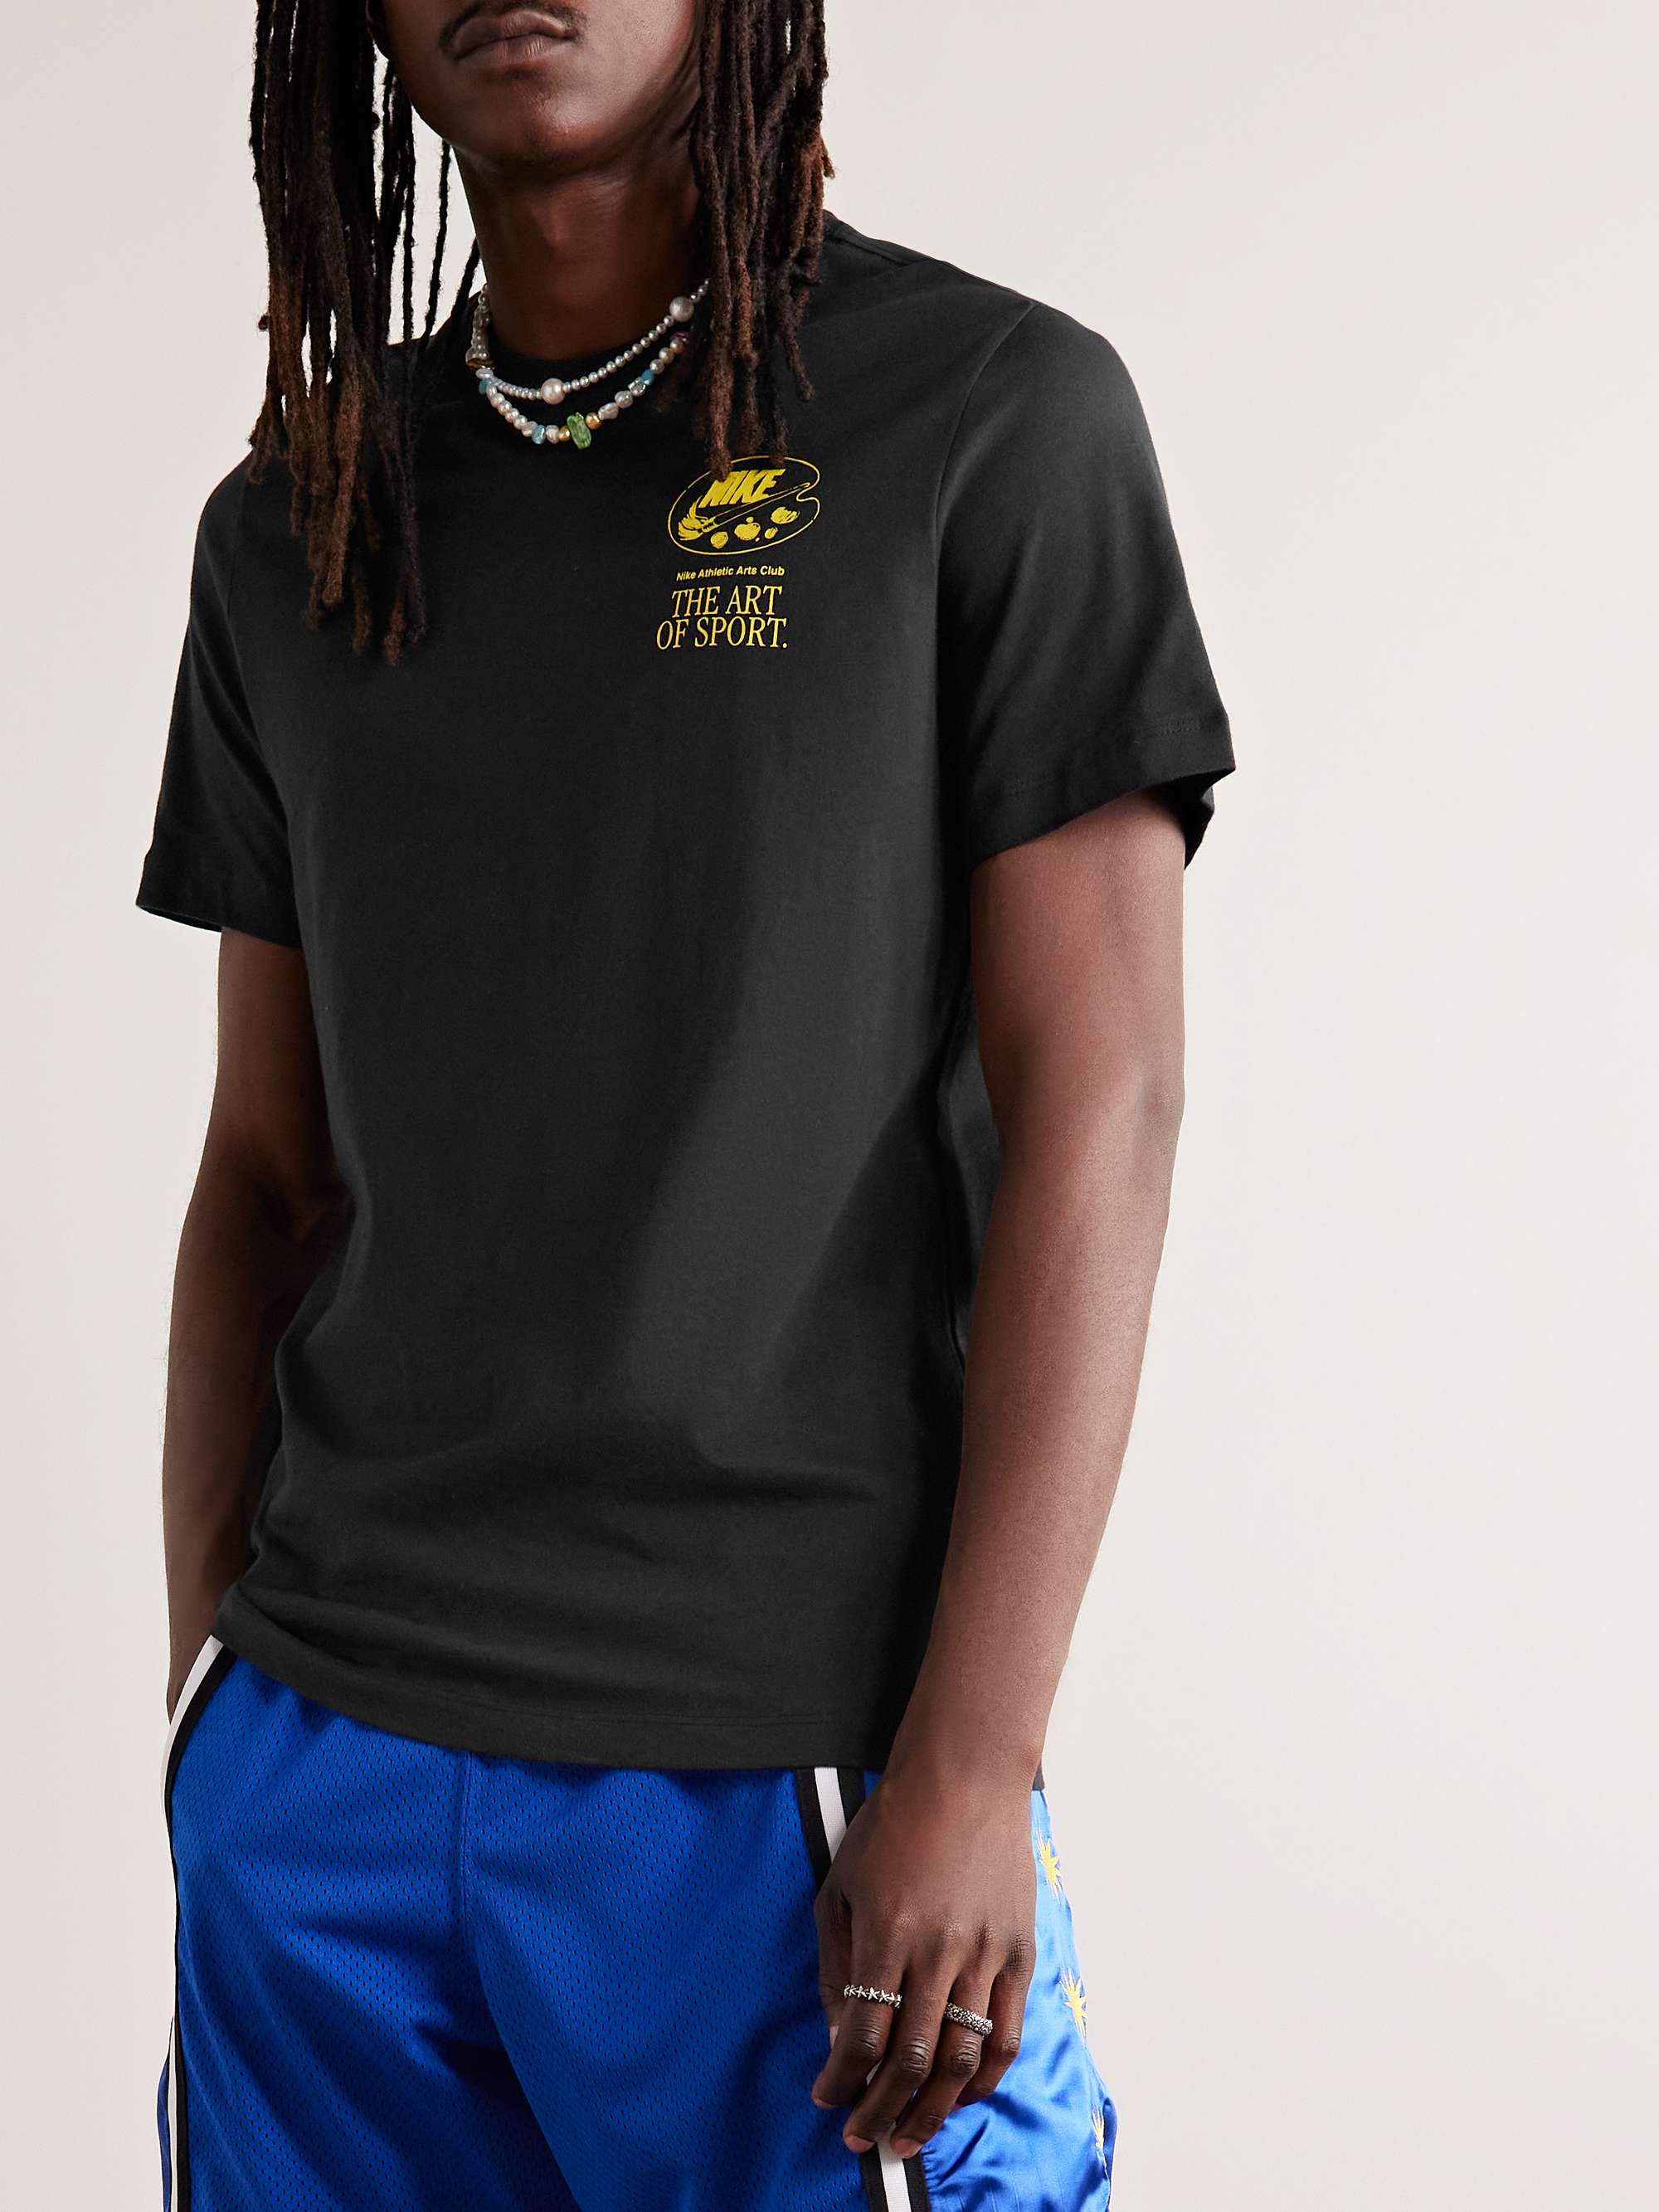 NIKE Sportswear Logo-Print Cotton-Jersey T-Shirt